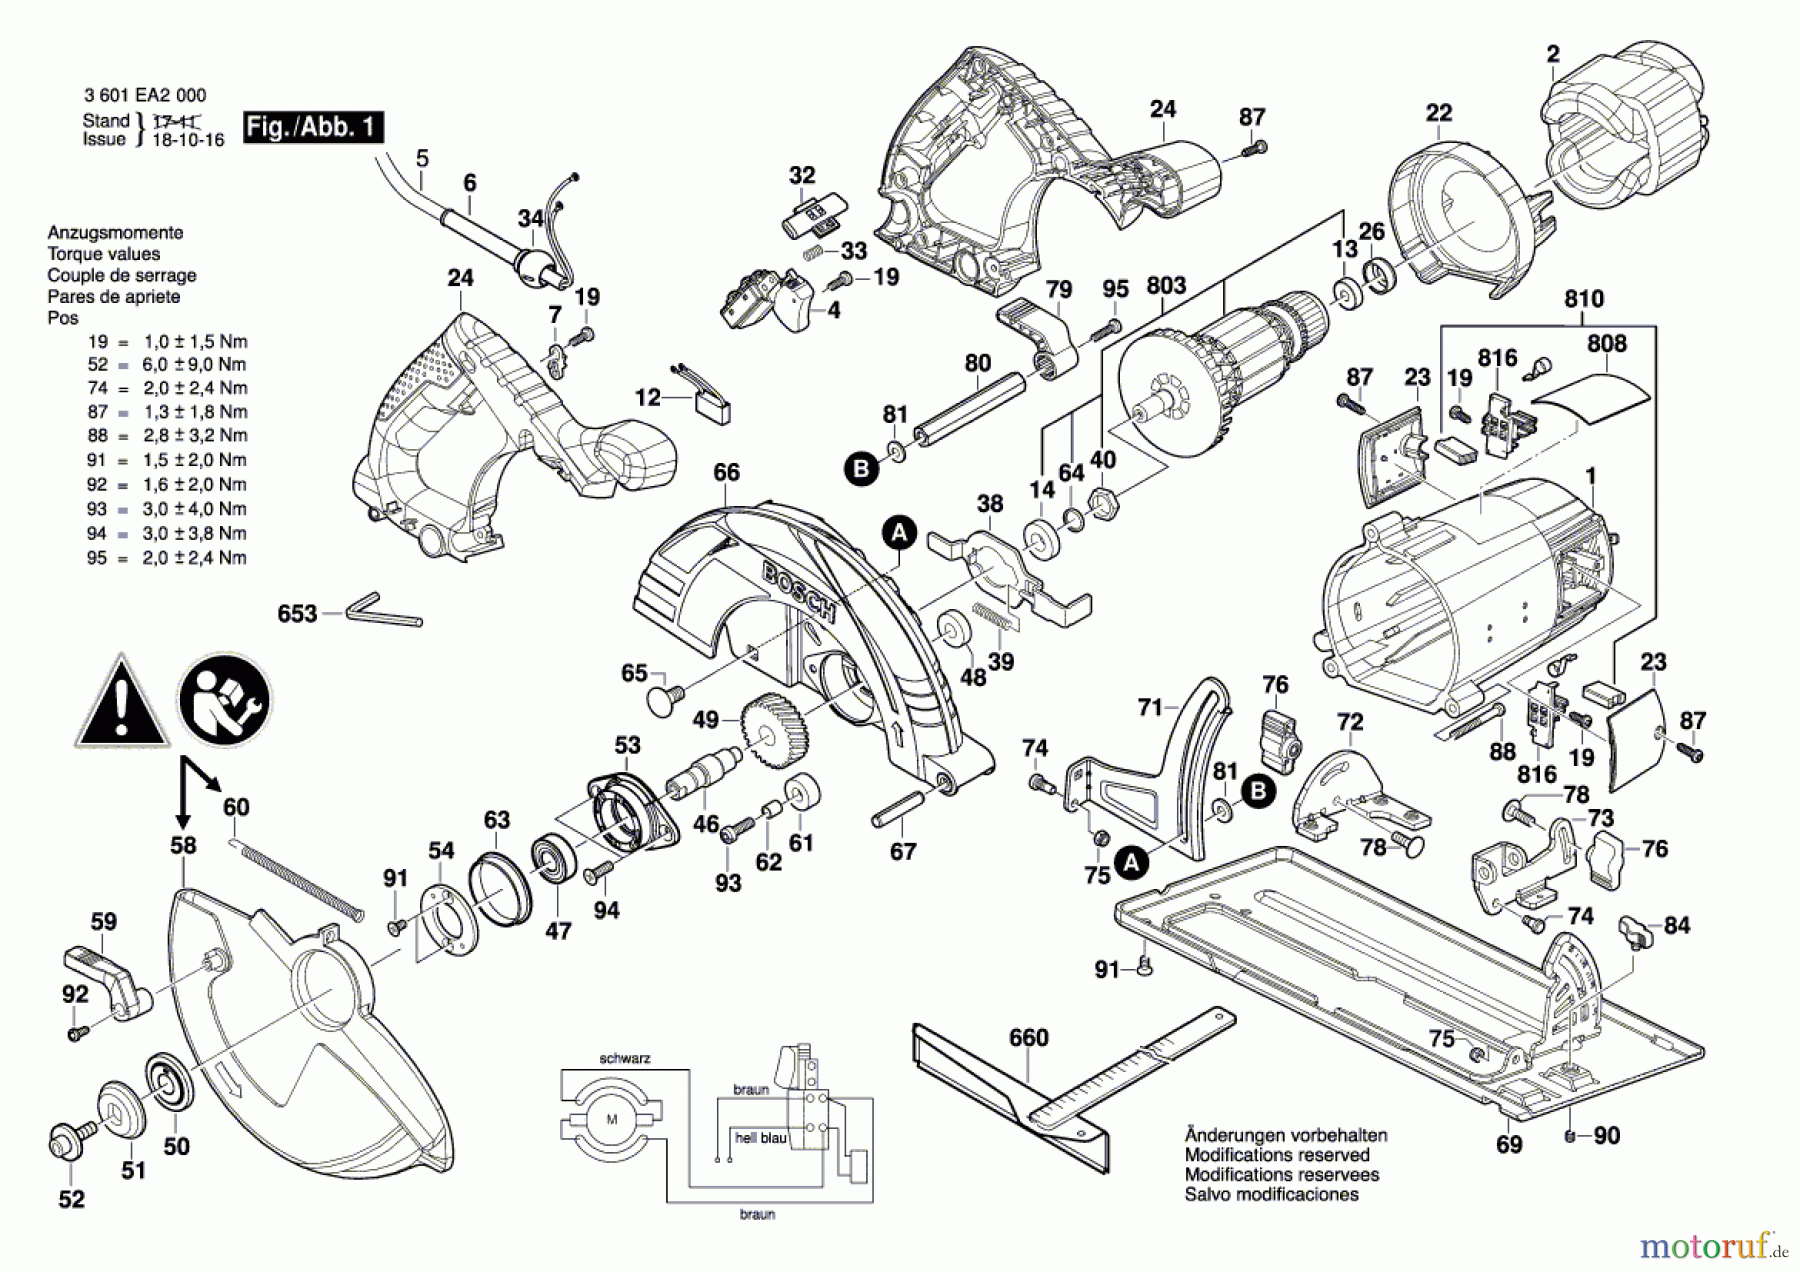  Bosch Werkzeug Handkreissäge GKS 9 Seite 1